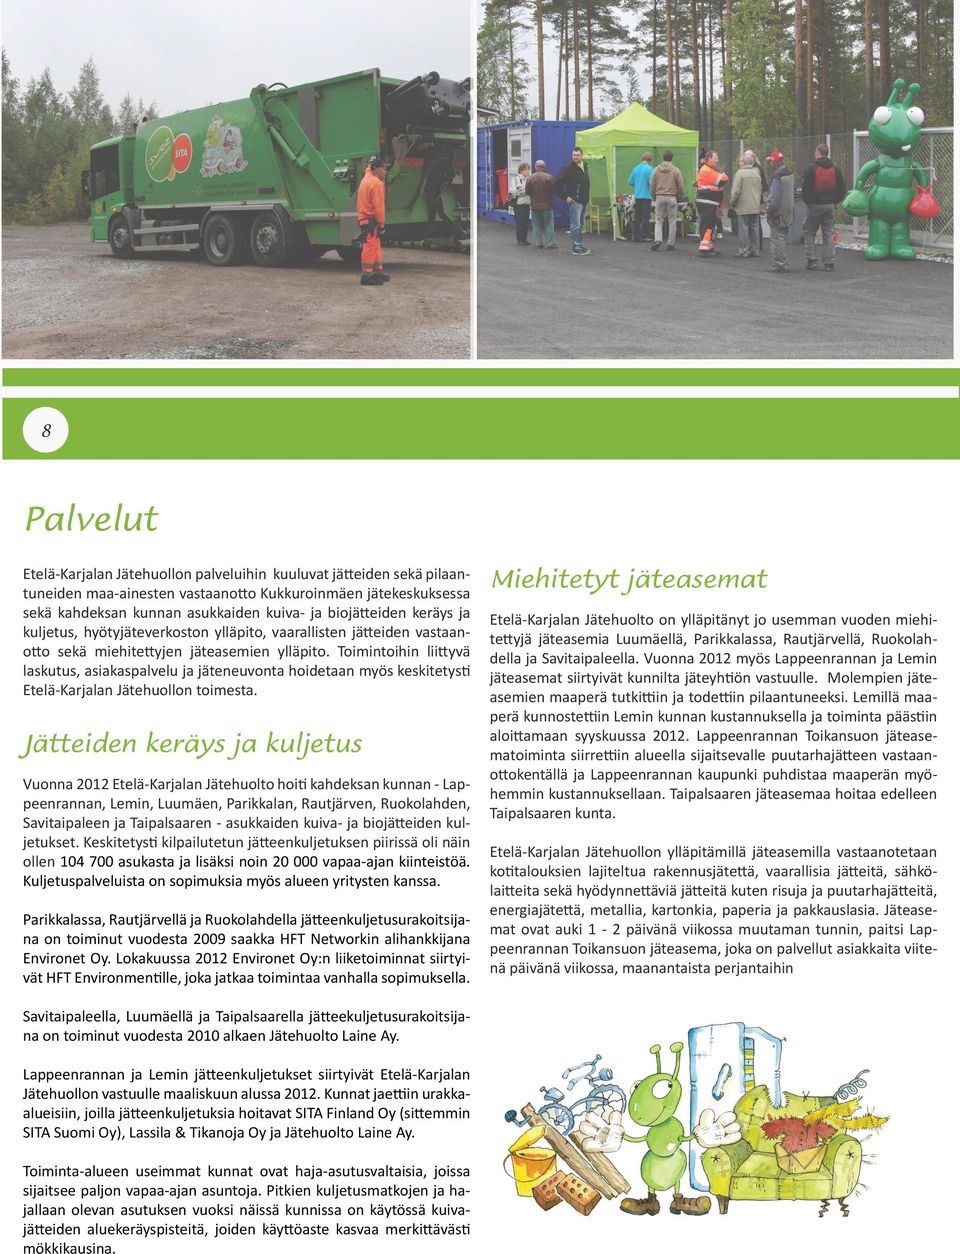 Toimintoihin liittyvä laskutus, asiakaspalvelu ja jäteneuvonta hoidetaan myös keskitetysti Etelä-Karjalan Jätehuollon toimesta.